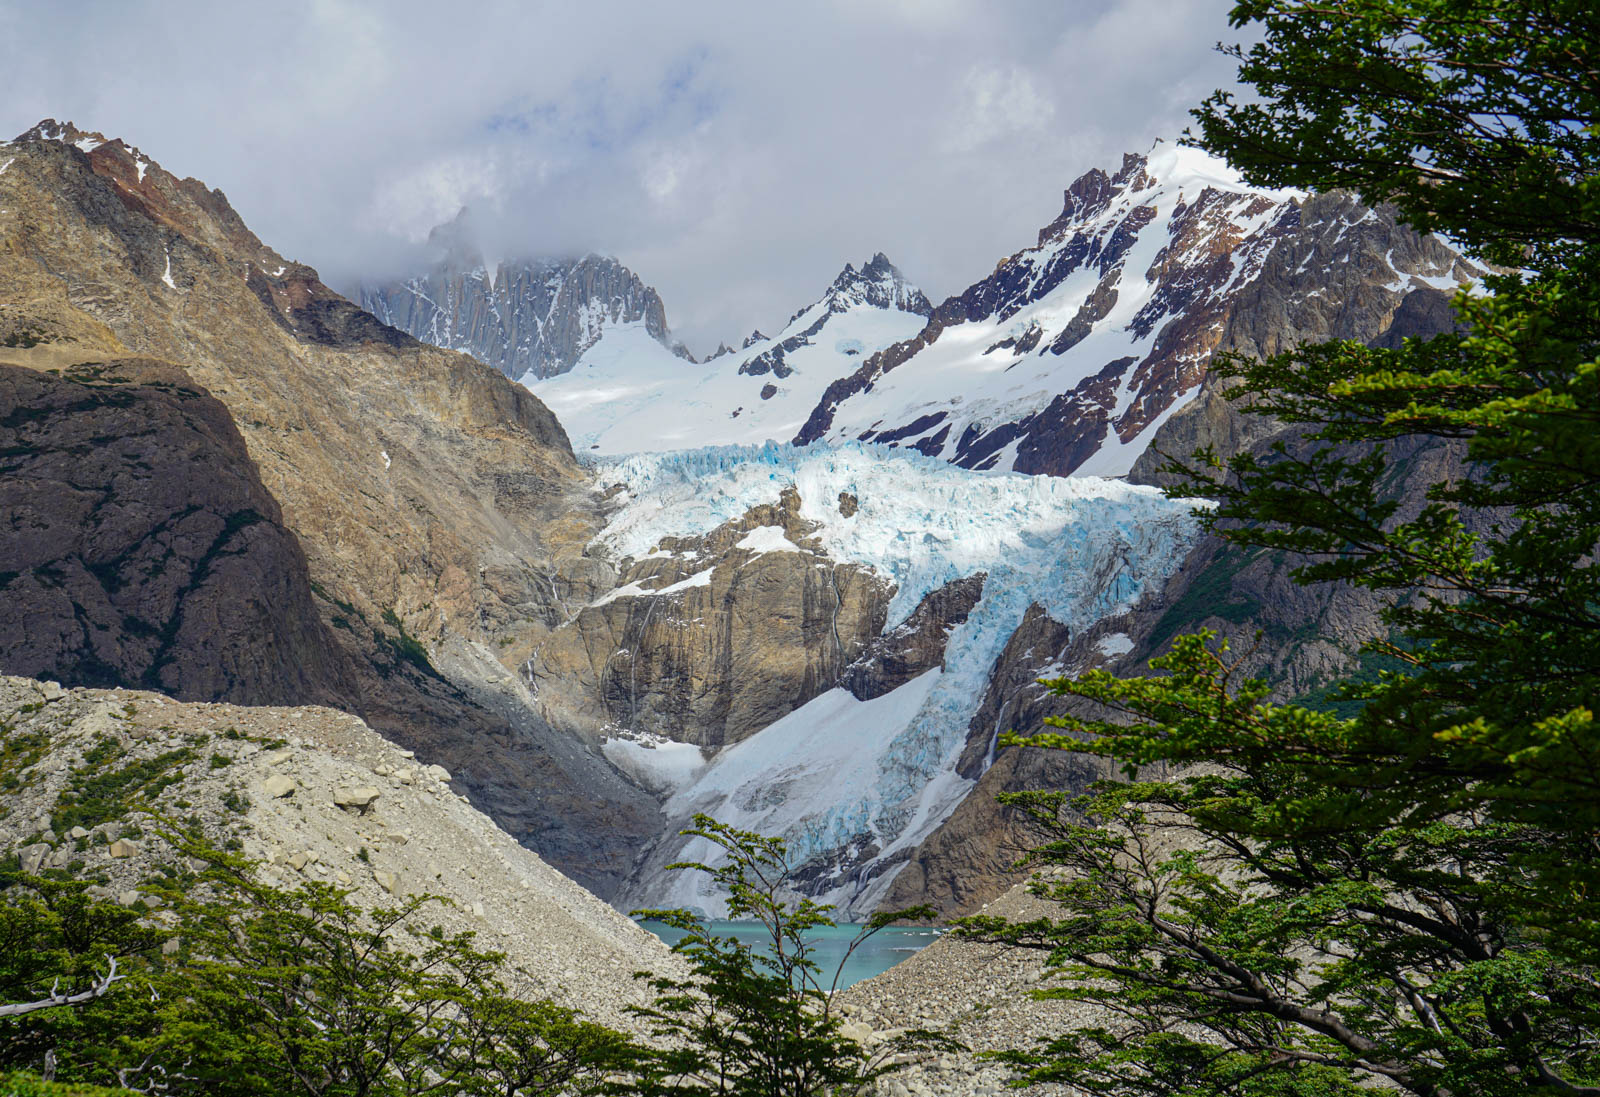 Glacier viewpoint #1